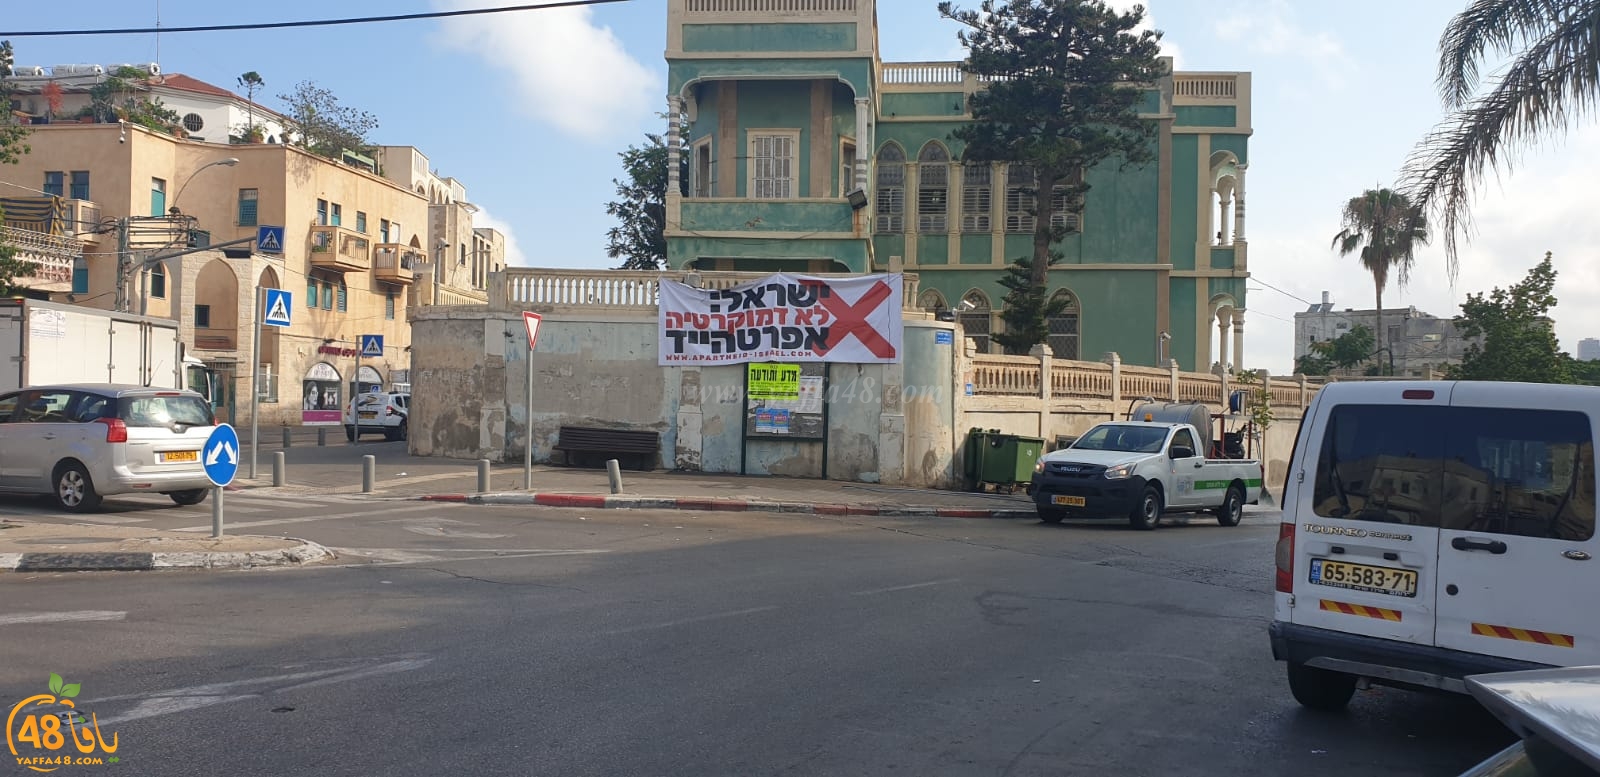  صور: لافتة وسط يافا اسرائيل ليست ديمقراطية، دولة ابرتهايد